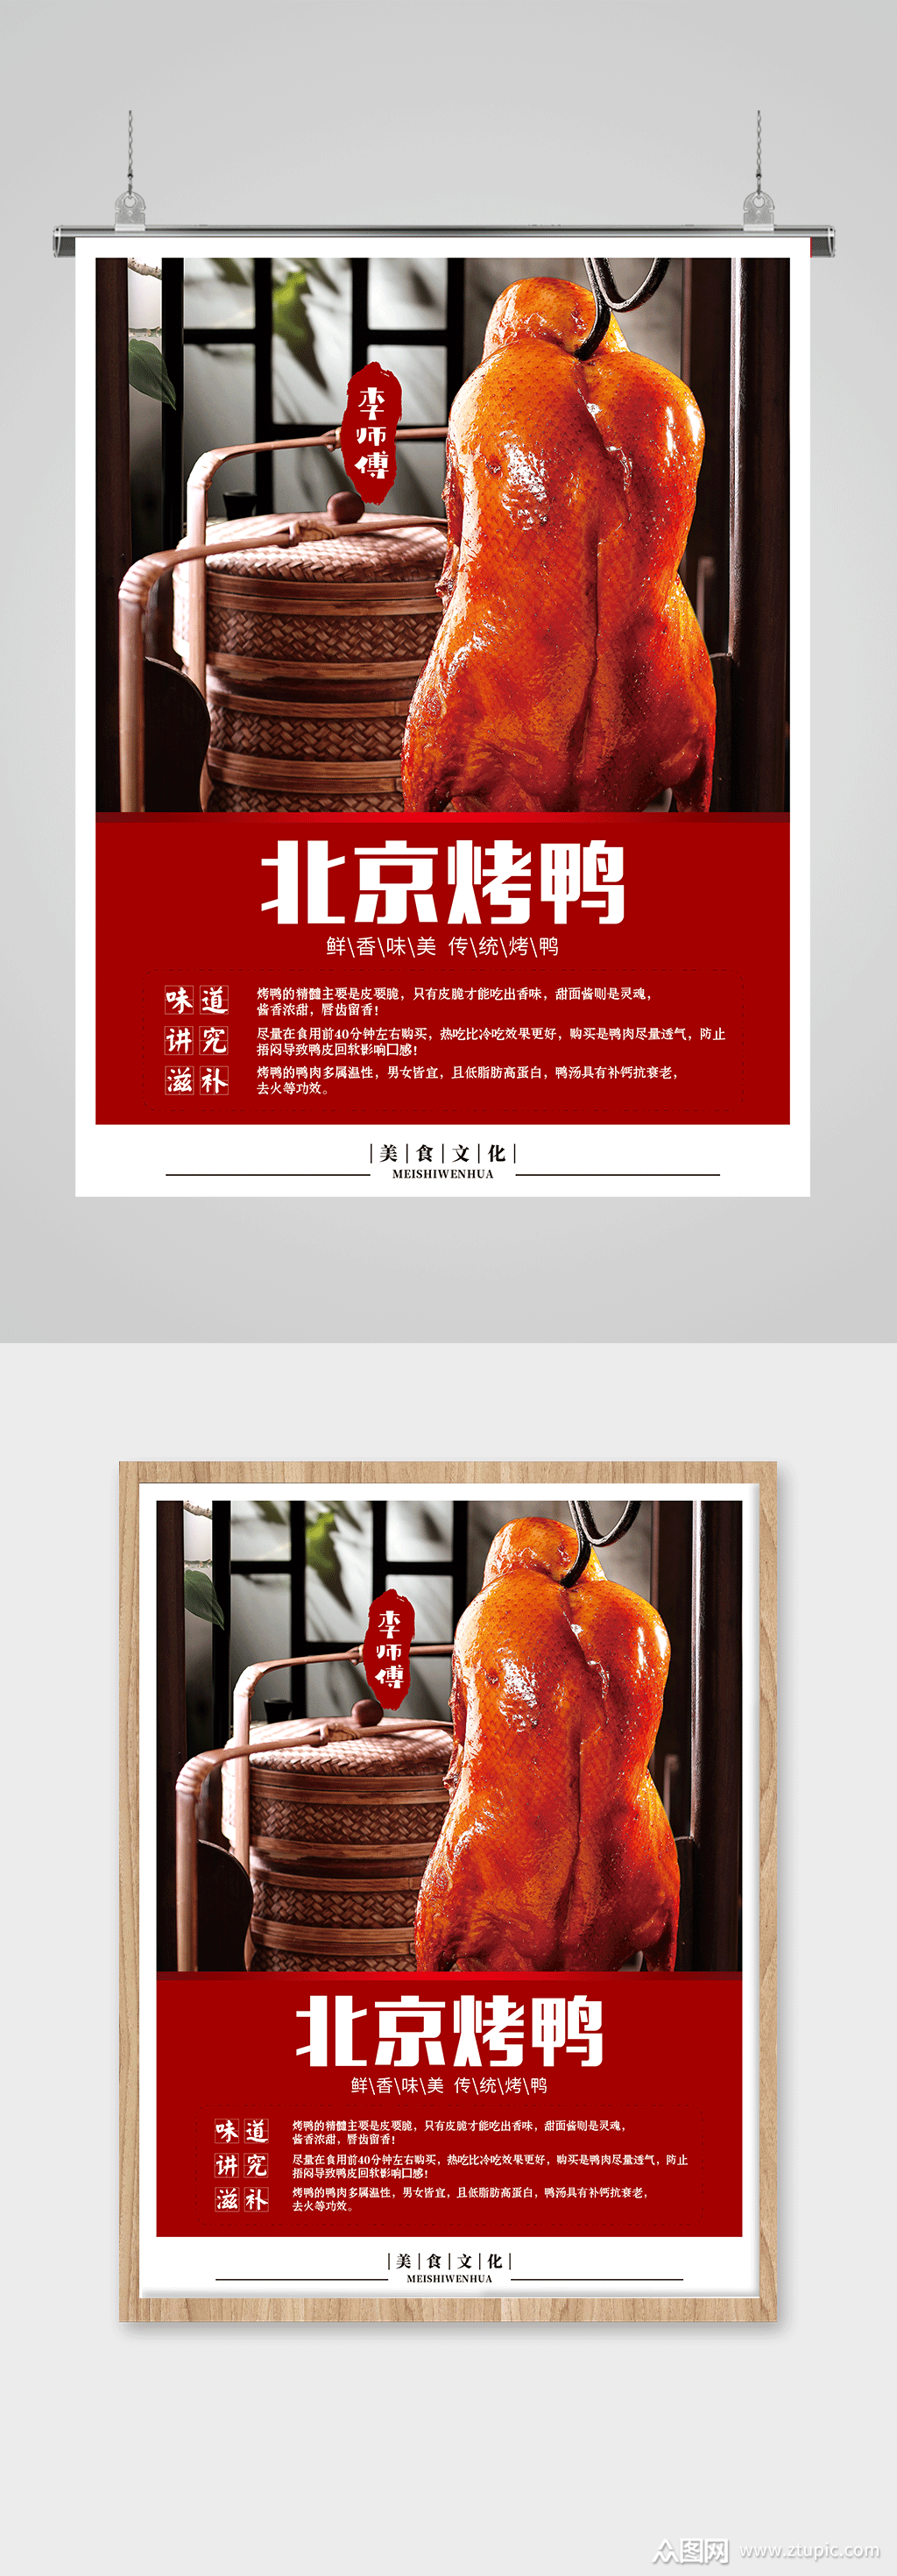 北京烤鸭美食海报模板下载-编号1968267-众图网